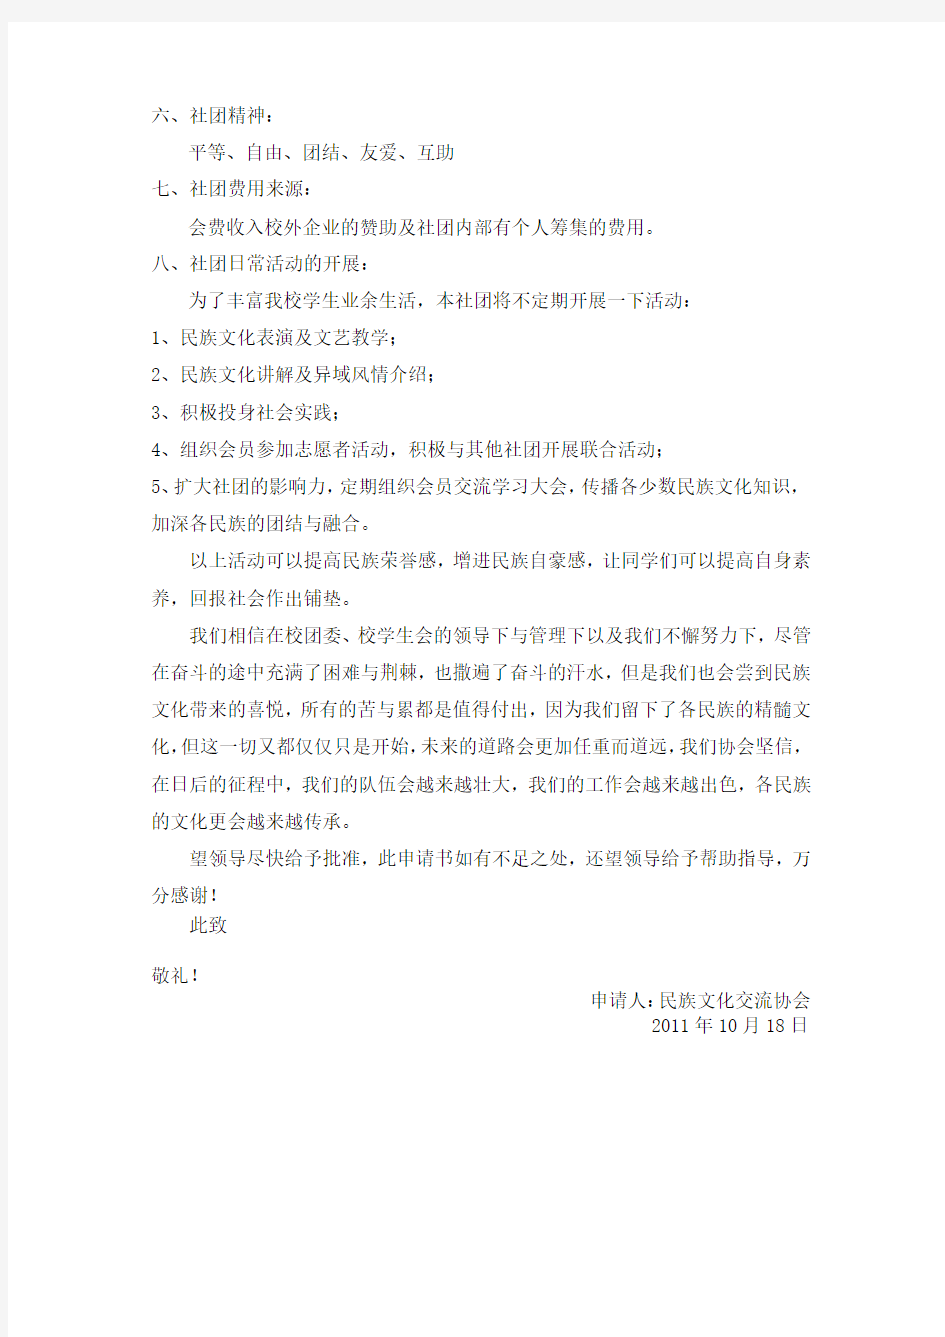 南昌理工学院民族文化交流协会成立申请书